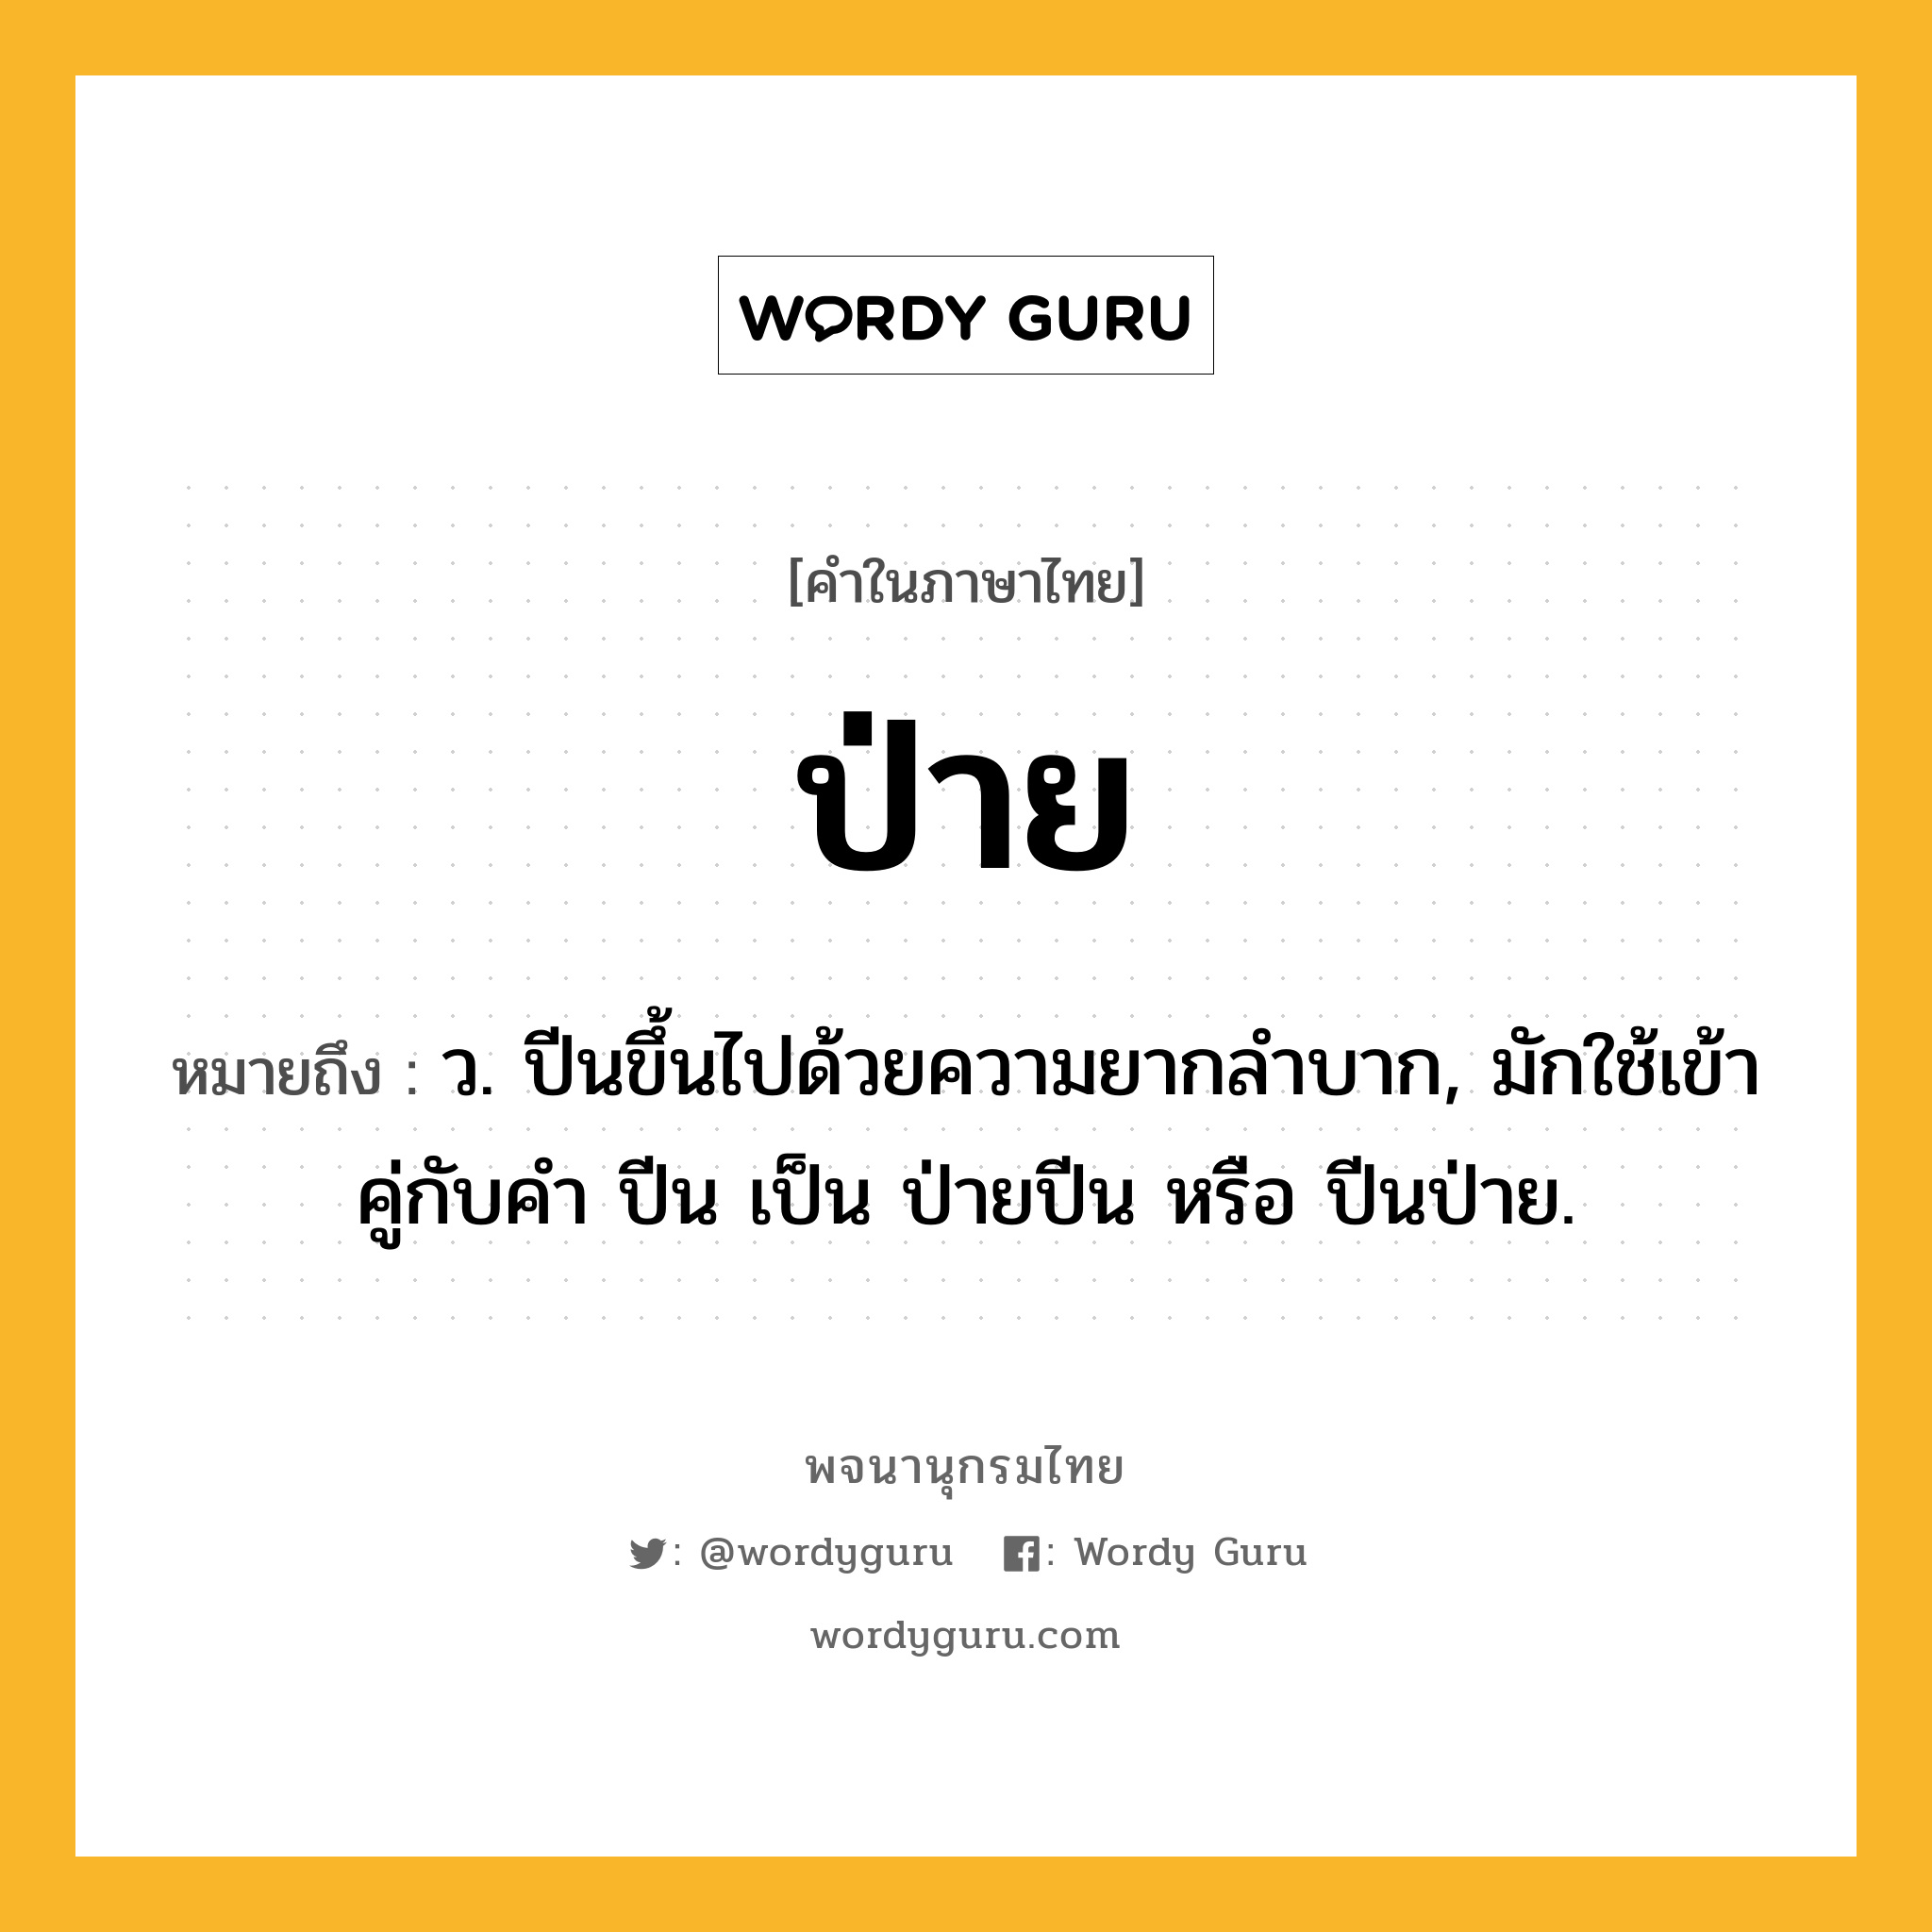 ป่าย หมายถึงอะไร?, คำในภาษาไทย ป่าย หมายถึง ว. ปีนขึ้นไปด้วยความยากลําบาก, มักใช้เข้าคู่กับคํา ปีน เป็น ป่ายปีน หรือ ปีนป่าย.